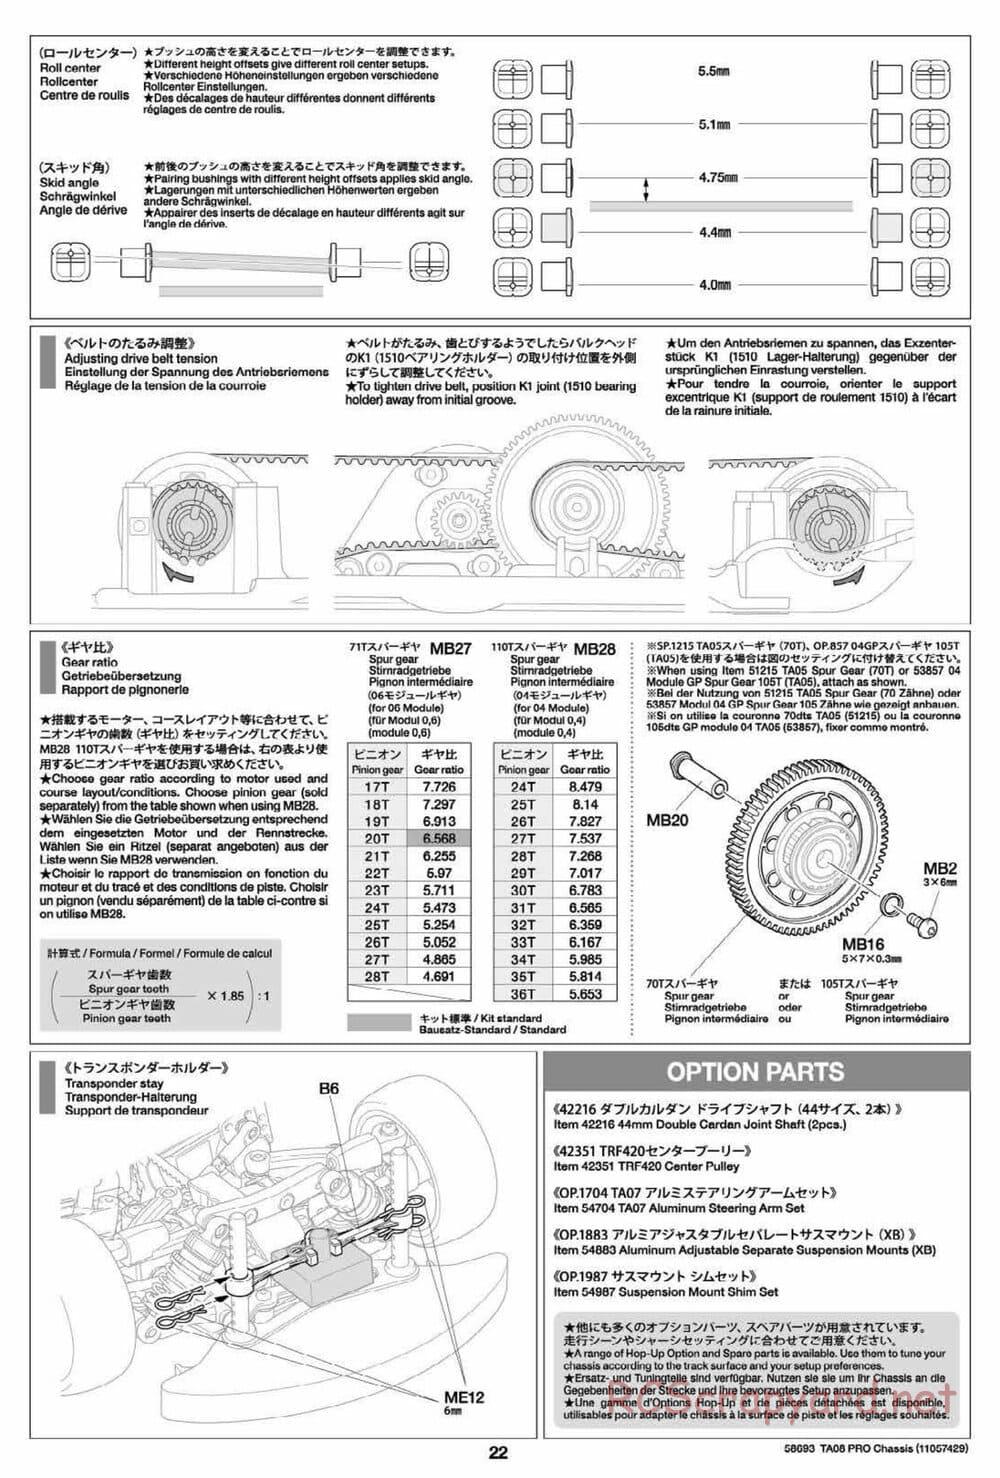 Tamiya - TA08 Pro Chassis - Manual - Page 22